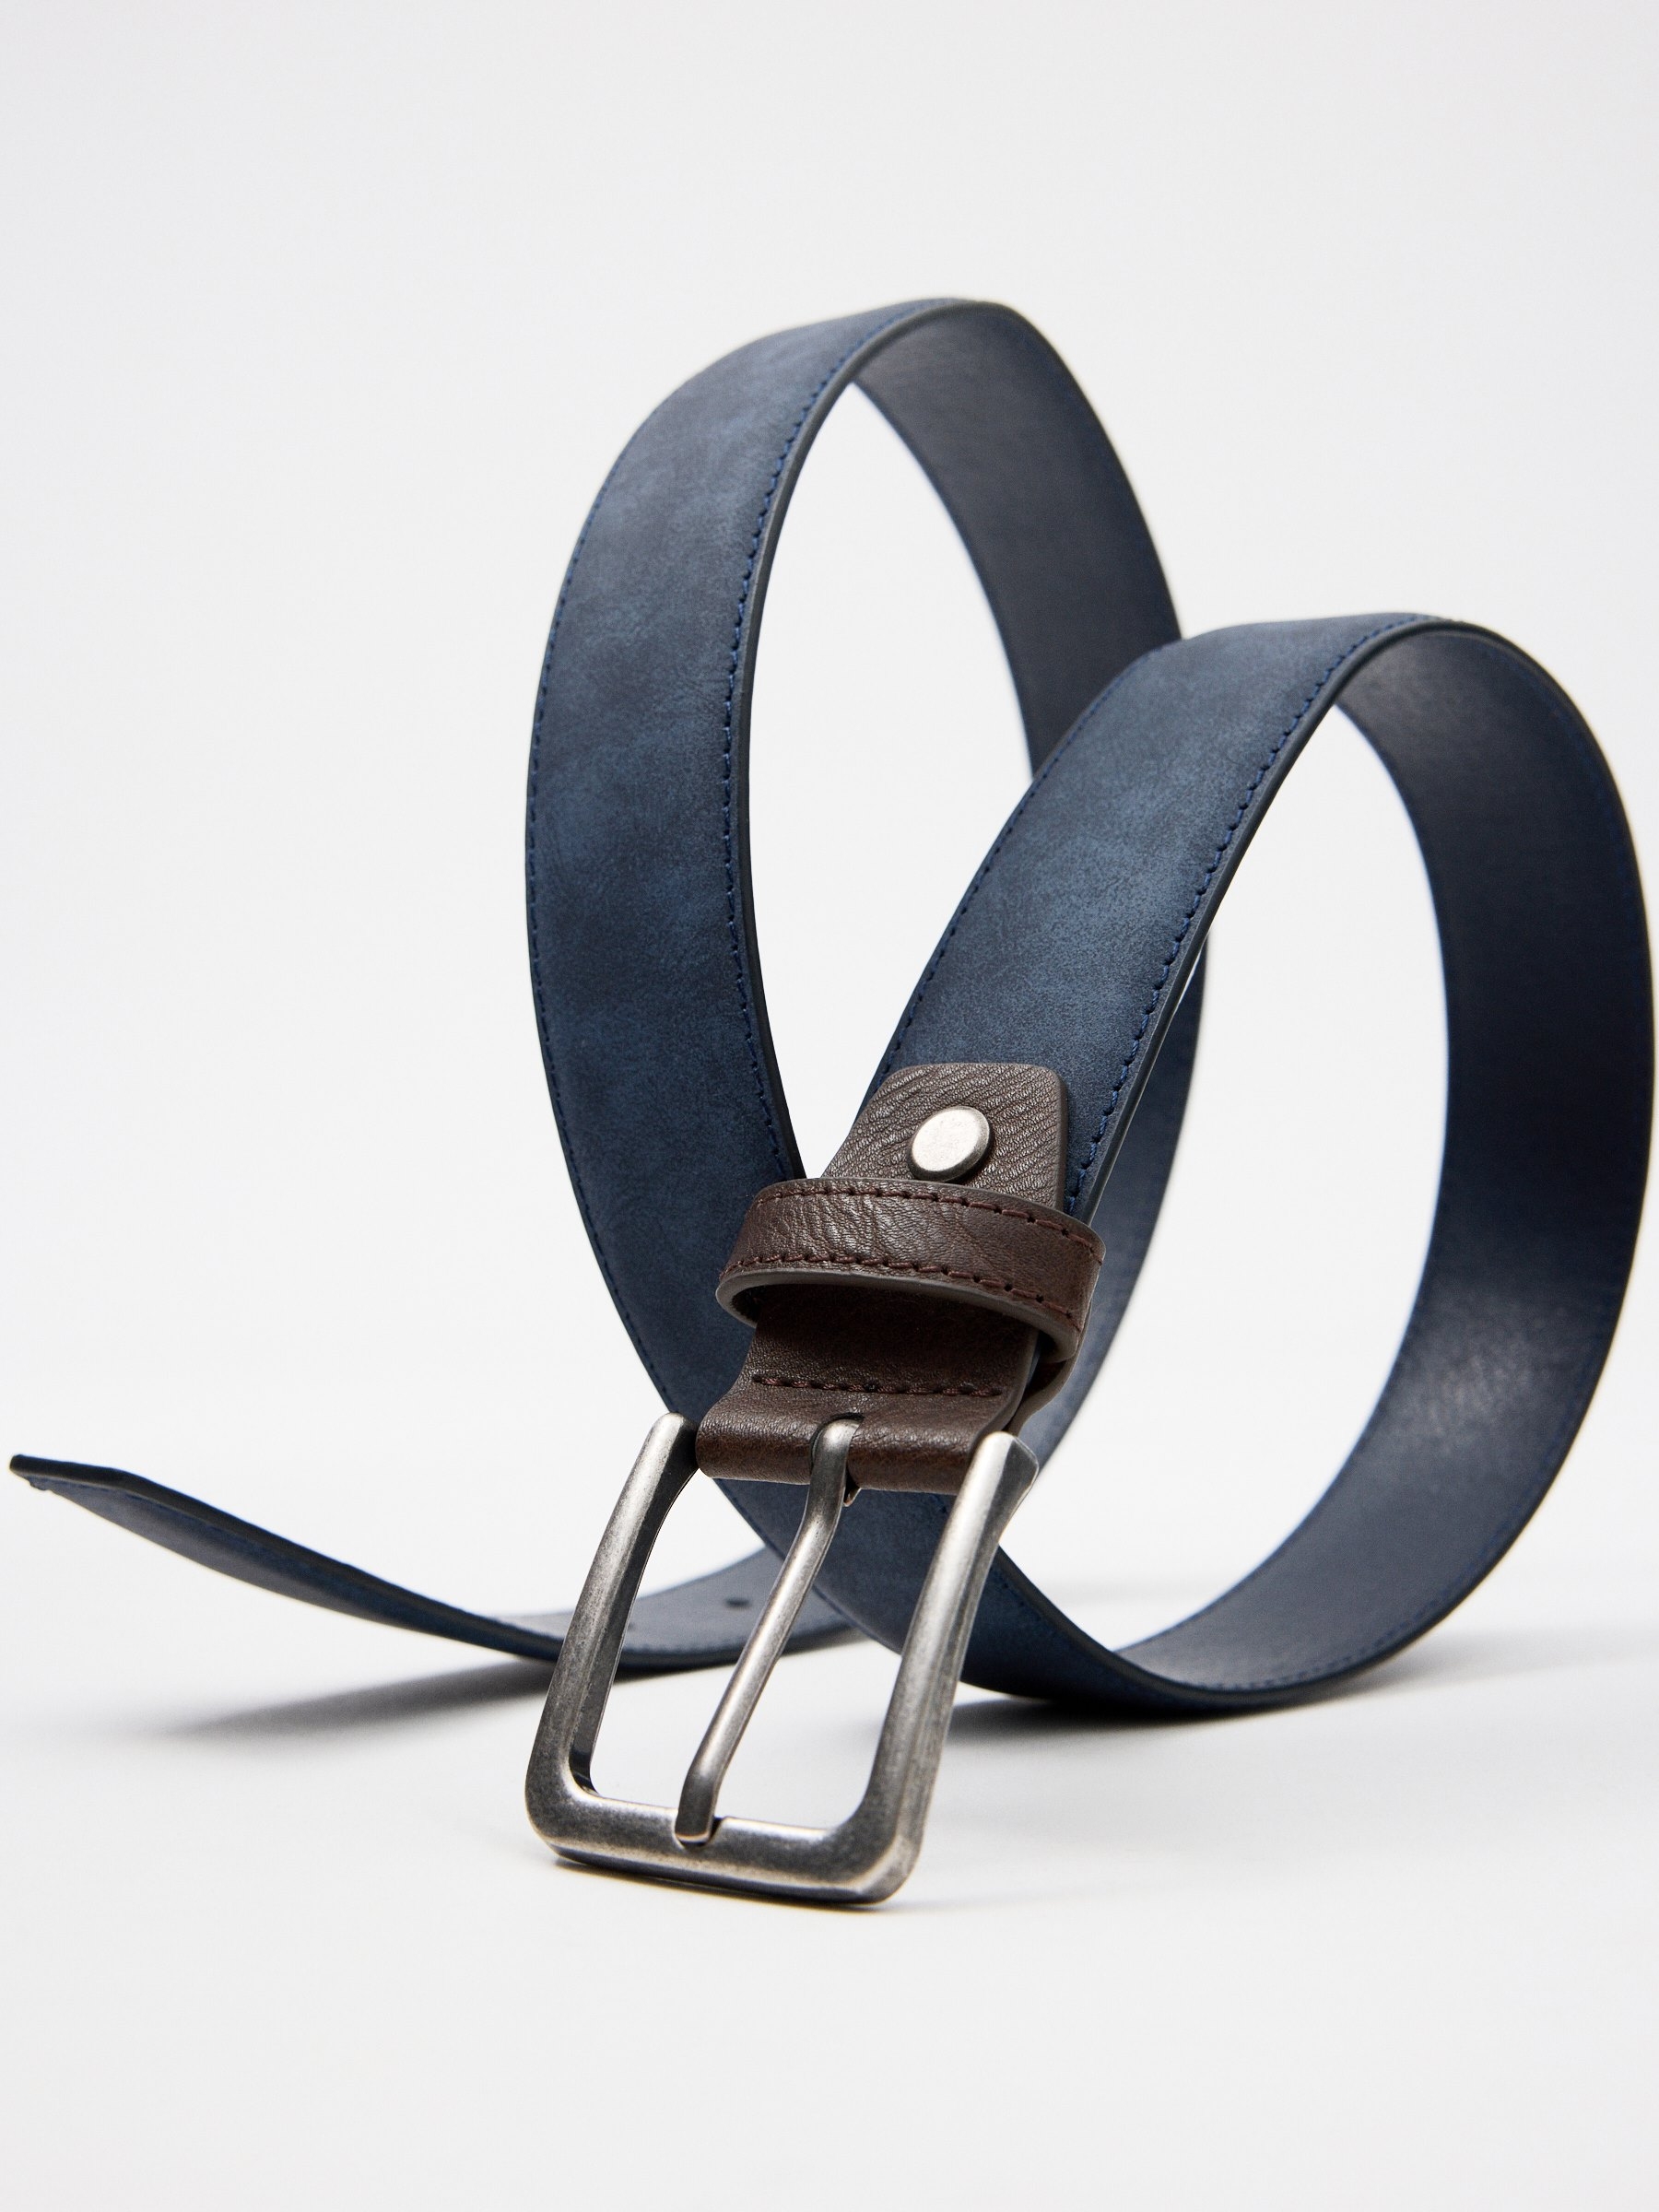 Ricardy Store - Cinturones de hombre 🔱 LV 🔱HERMÈS